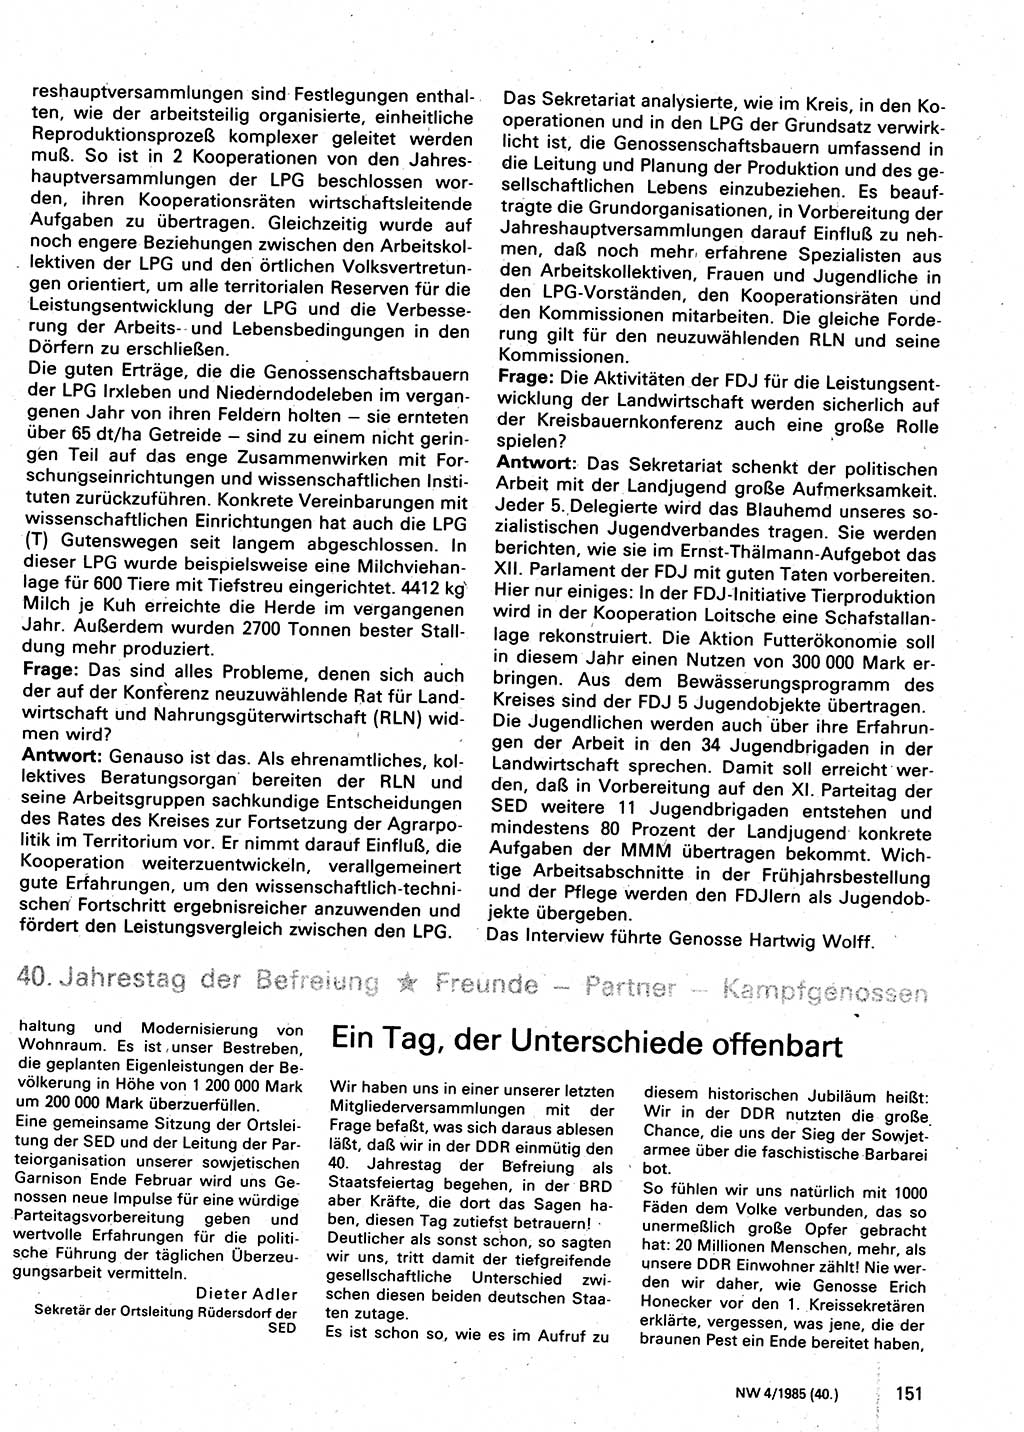 Neuer Weg (NW), Organ des Zentralkomitees (ZK) der SED (Sozialistische Einheitspartei Deutschlands) für Fragen des Parteilebens, 40. Jahrgang [Deutsche Demokratische Republik (DDR)] 1985, Seite 151 (NW ZK SED DDR 1985, S. 151)